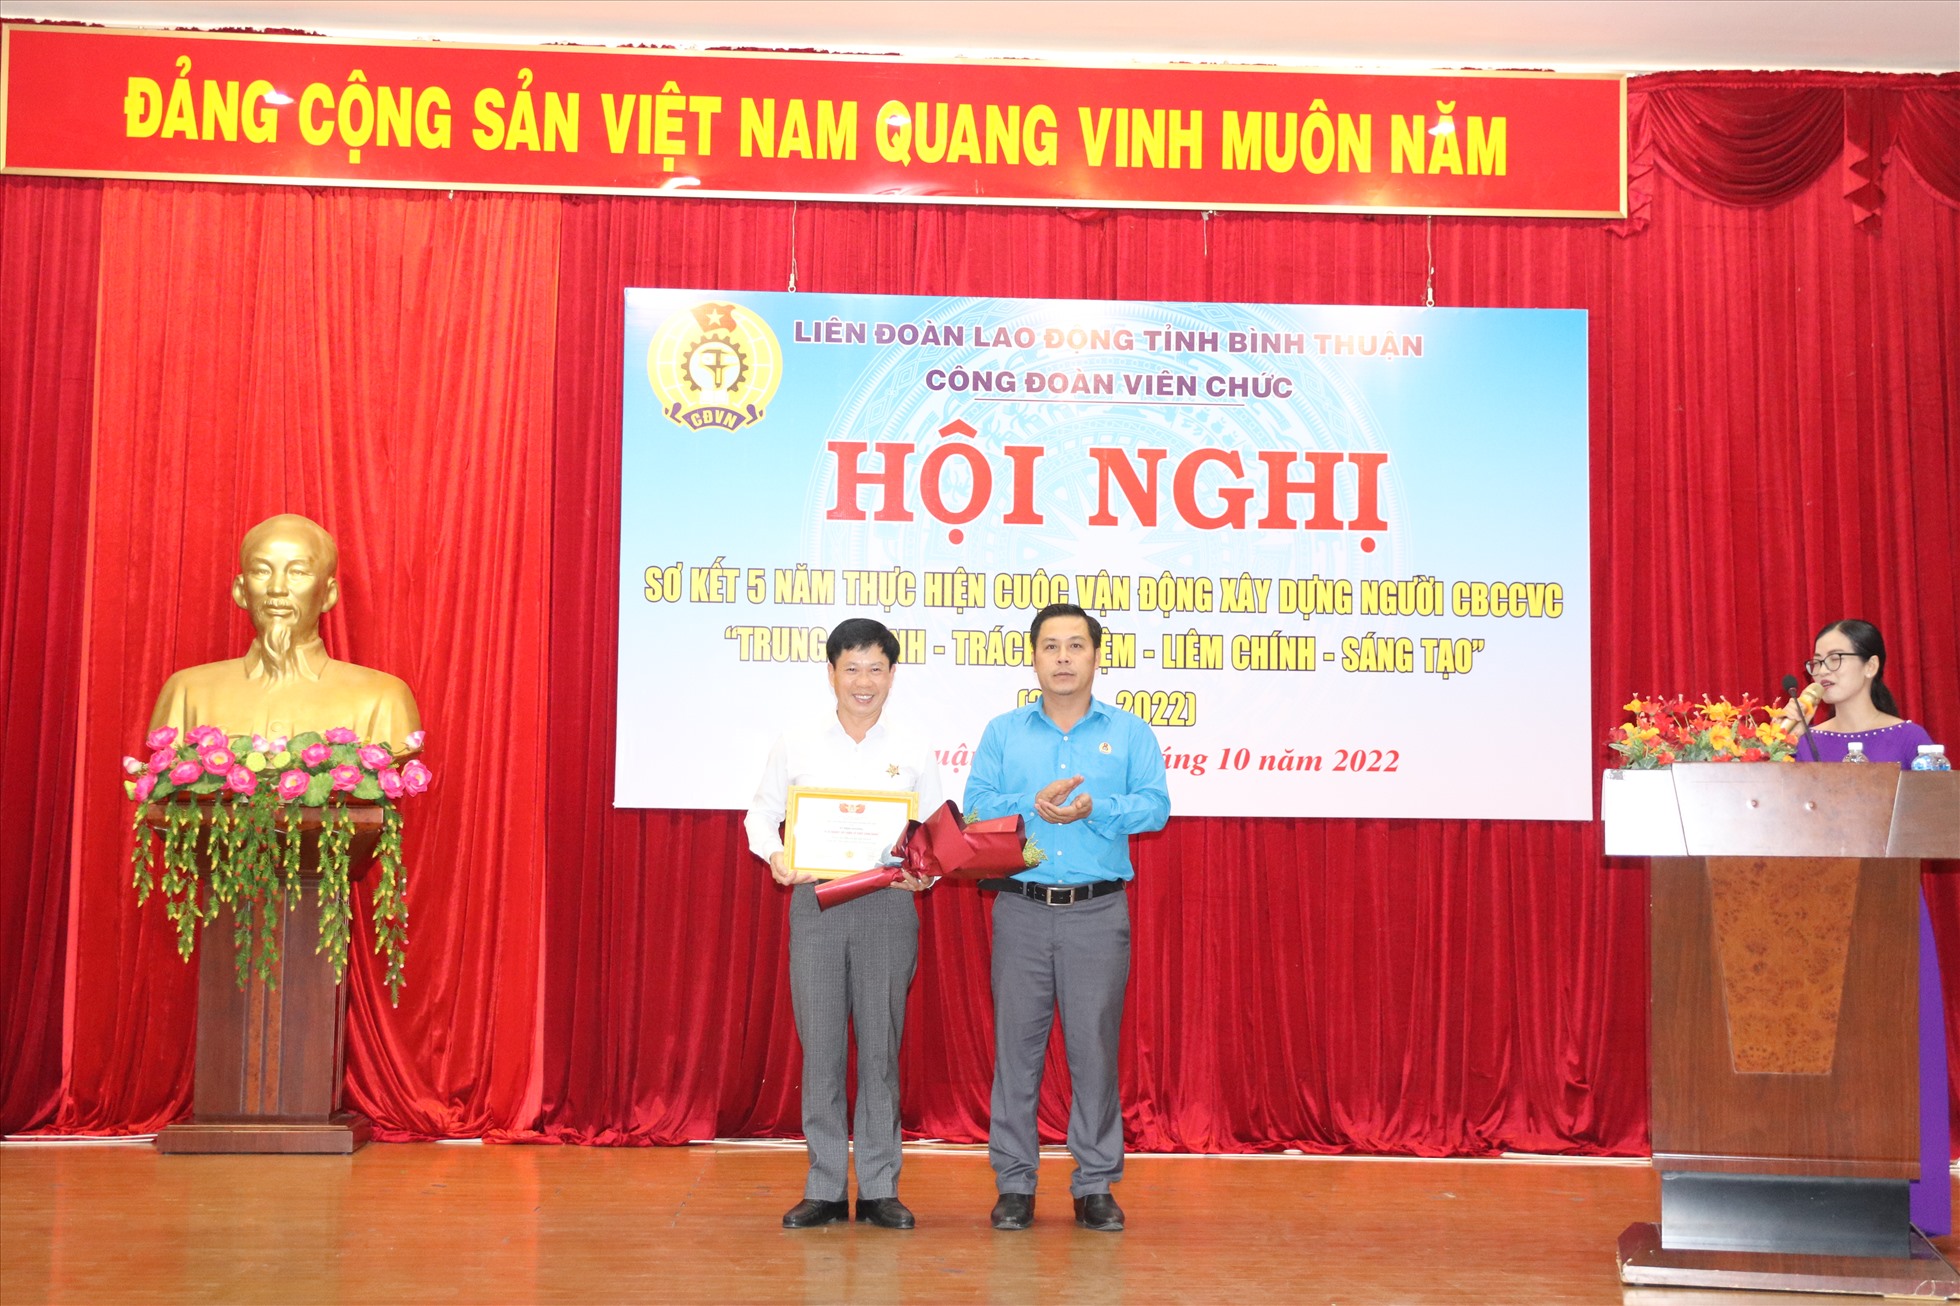 Ông Phạm Xuân Toan - Phó Giám đốc BHXH tỉnh được nhận kỷ niệm chương “Vì sự nghiệp công đoàn”. Ảnh: TL